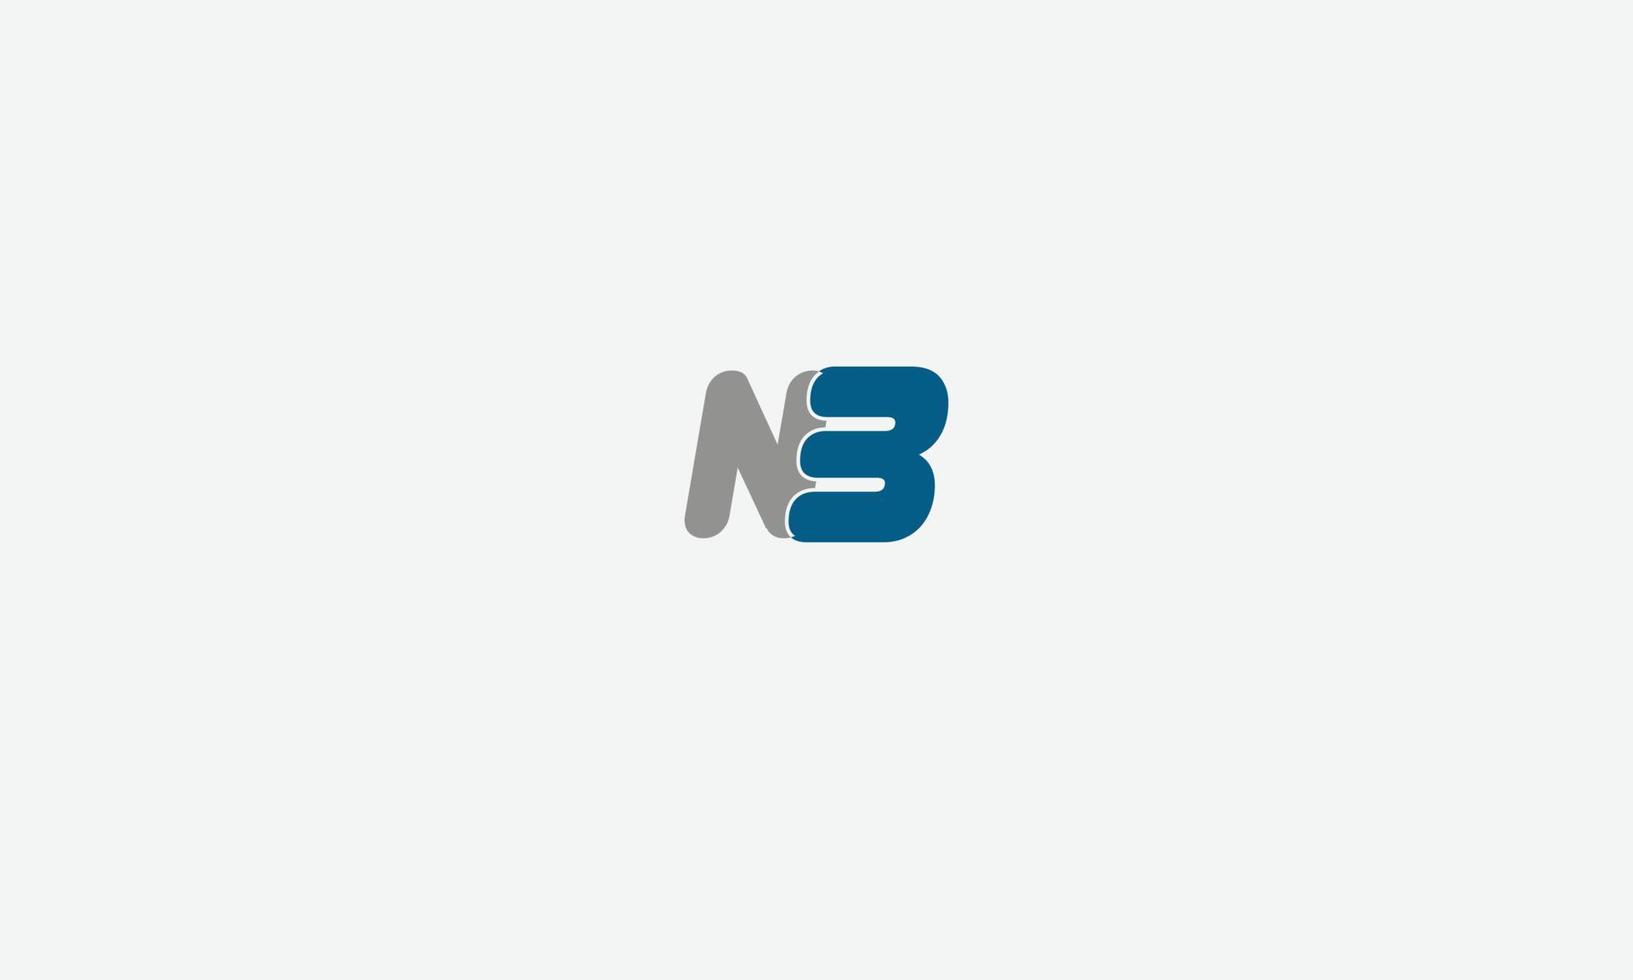 letras do alfabeto iniciais monograma logotipo nb, bn, n e b vetor